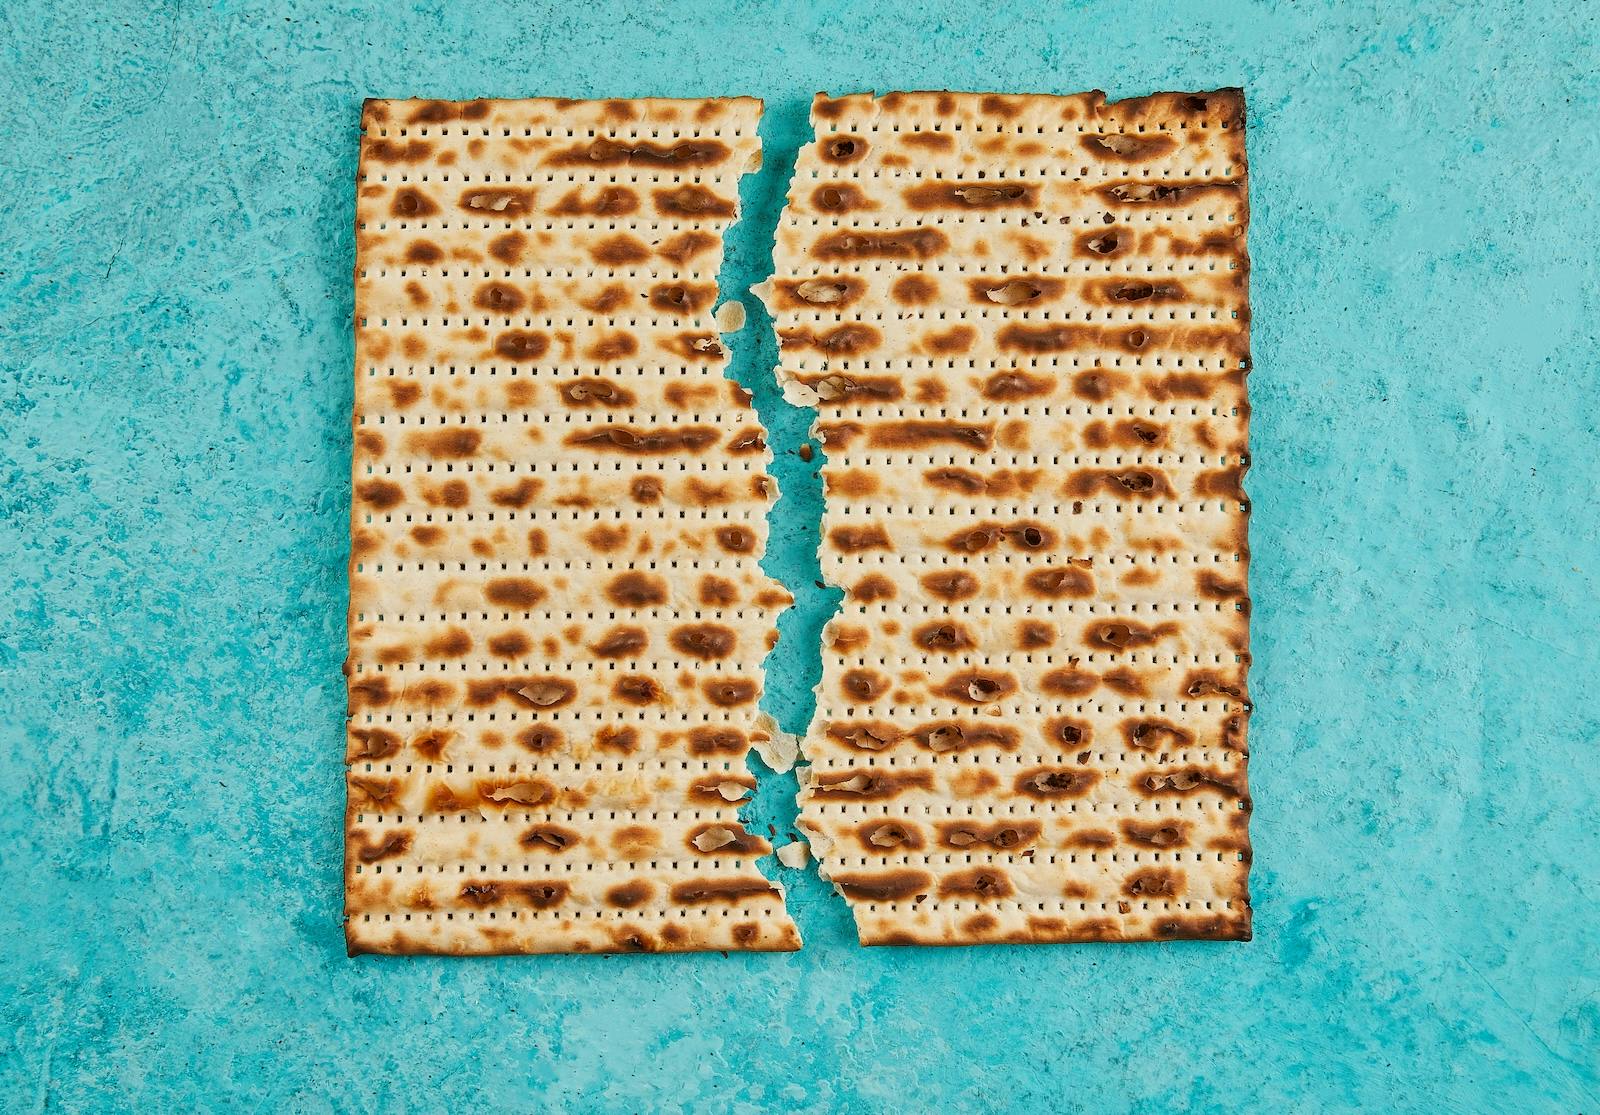 A broken piece of matzah on a teal background